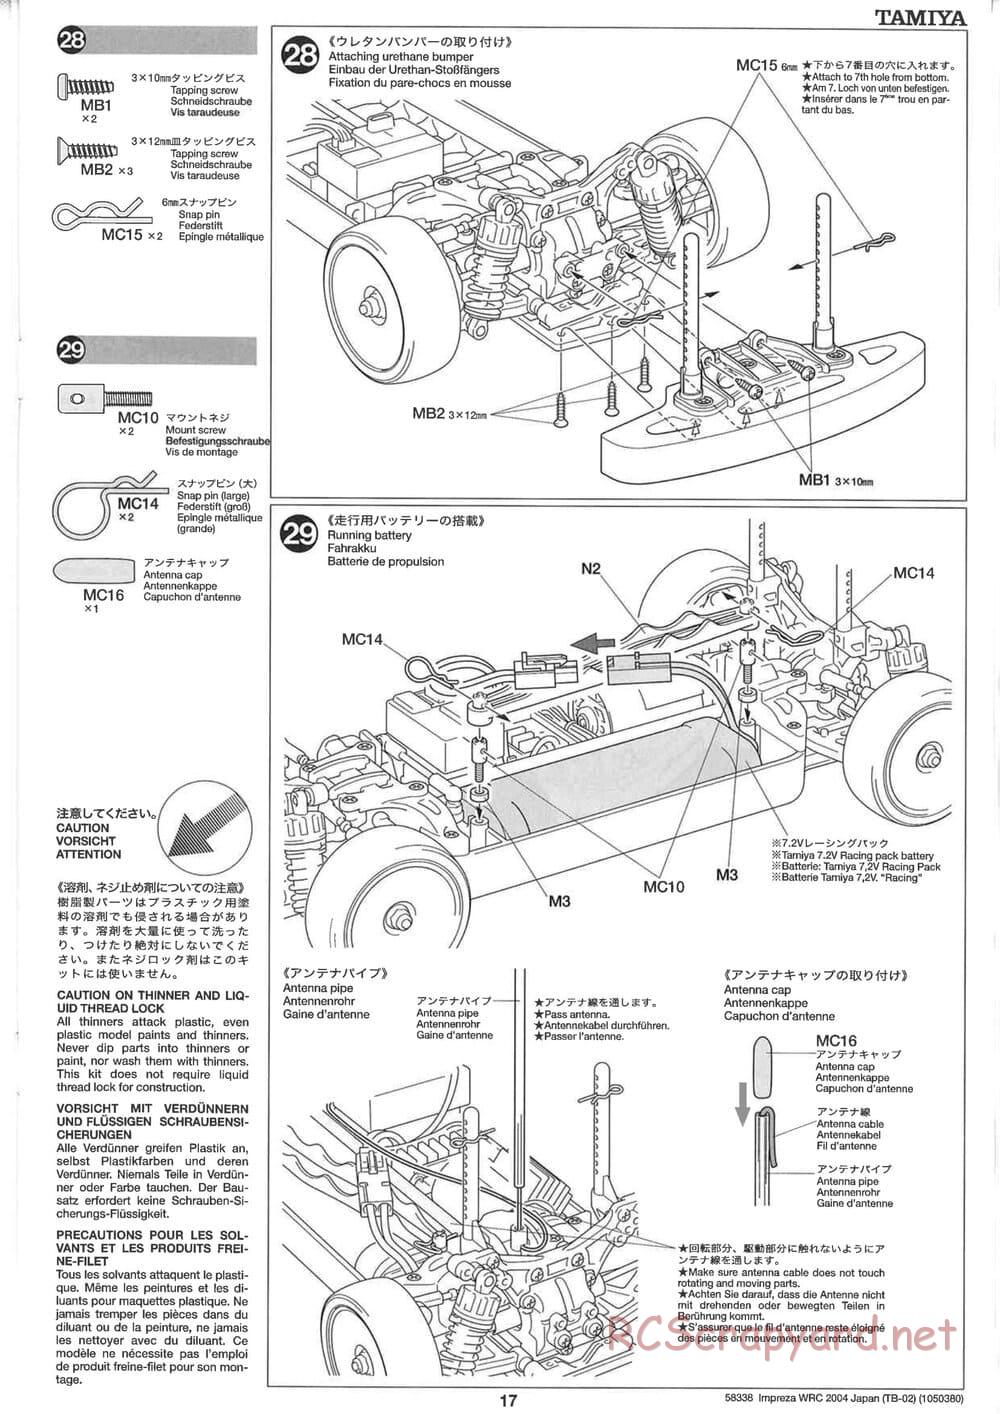 Tamiya - Subaru Impreza WRC 2004 Rally Japan - TB-02 Chassis - Manual - Page 17